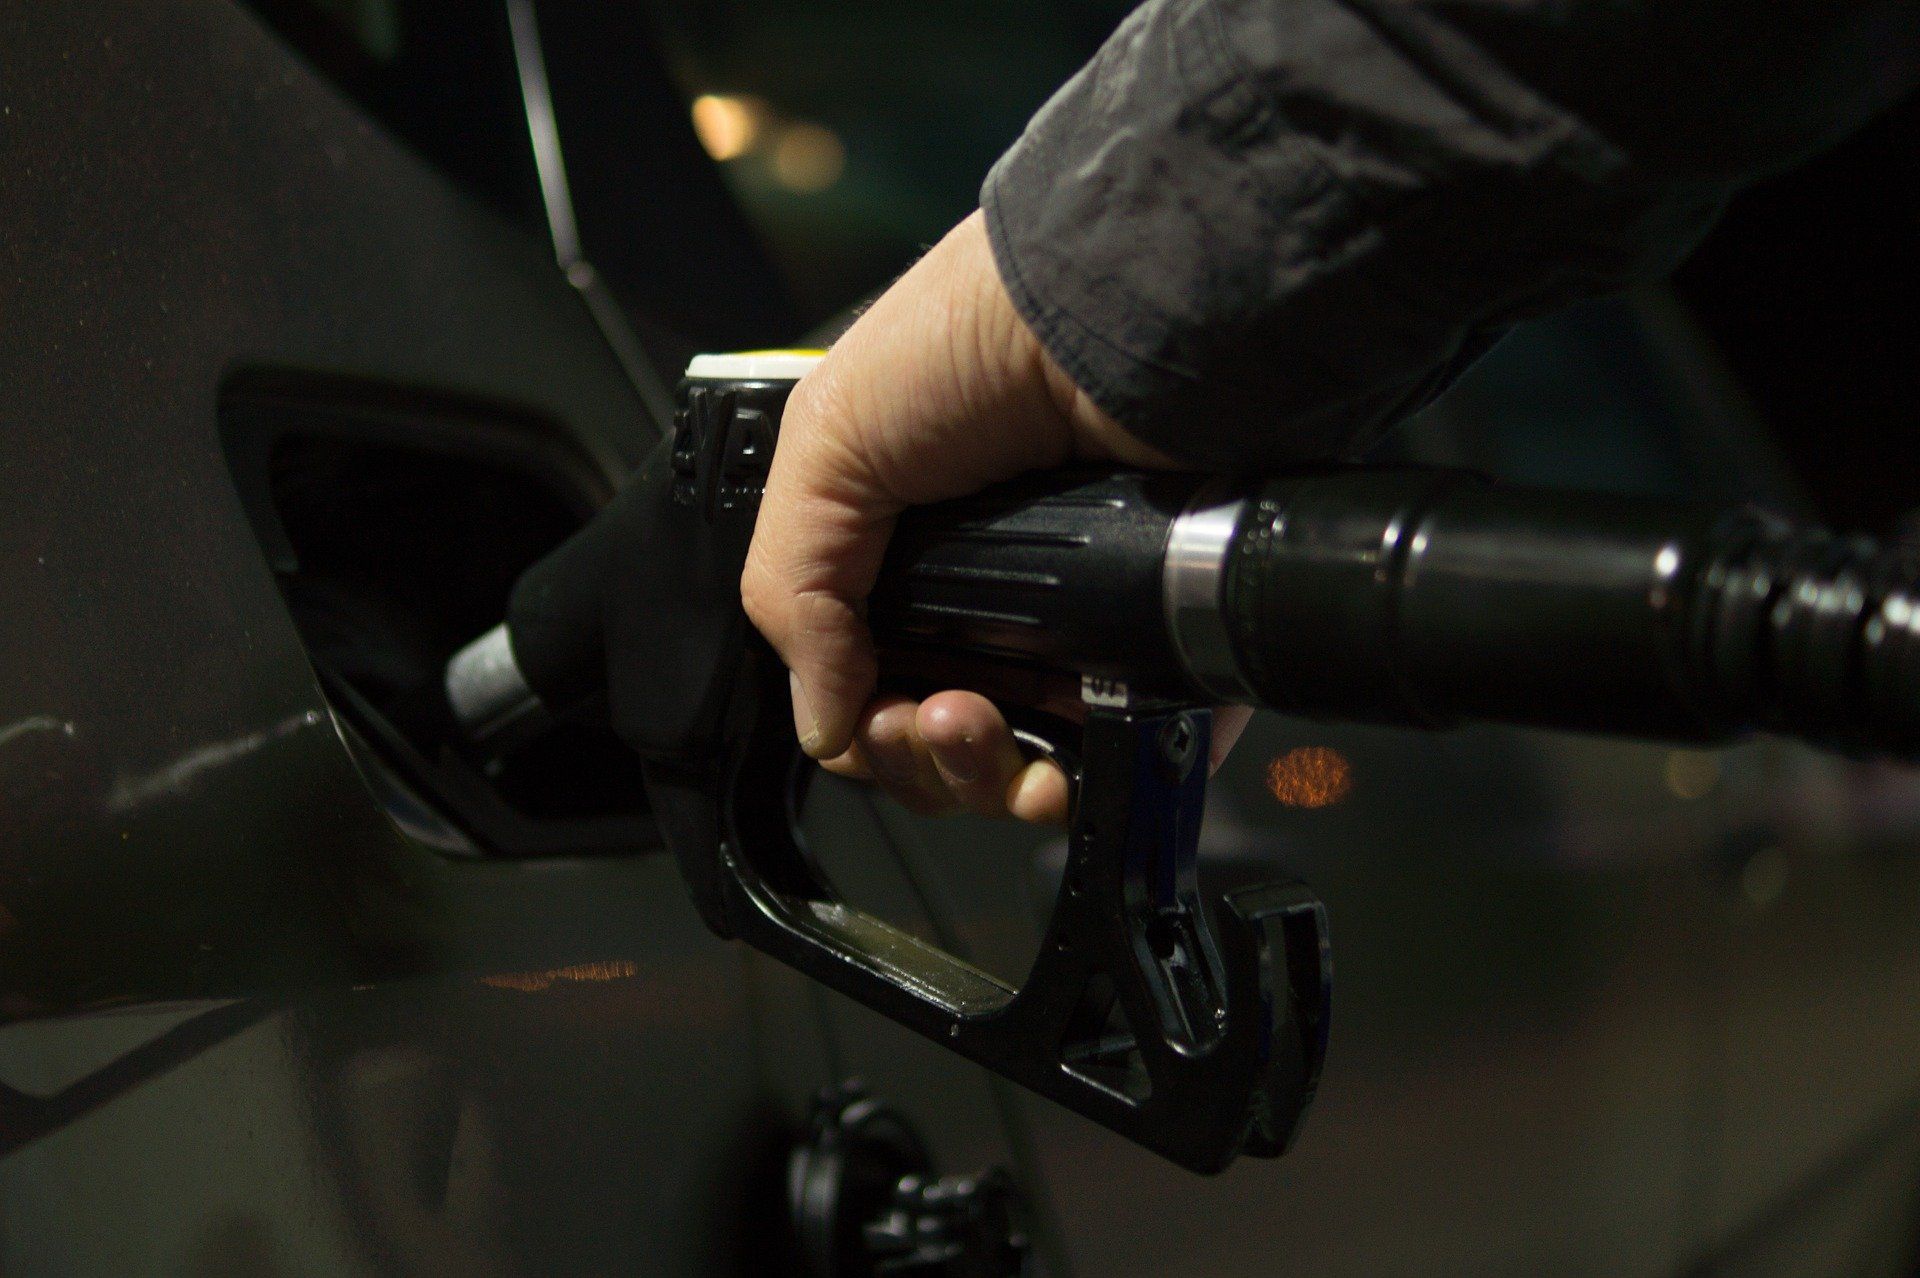 Fuel price May 23, 2022: Petrol Rs 96.72, diesel Rs 89.62 in Delhi